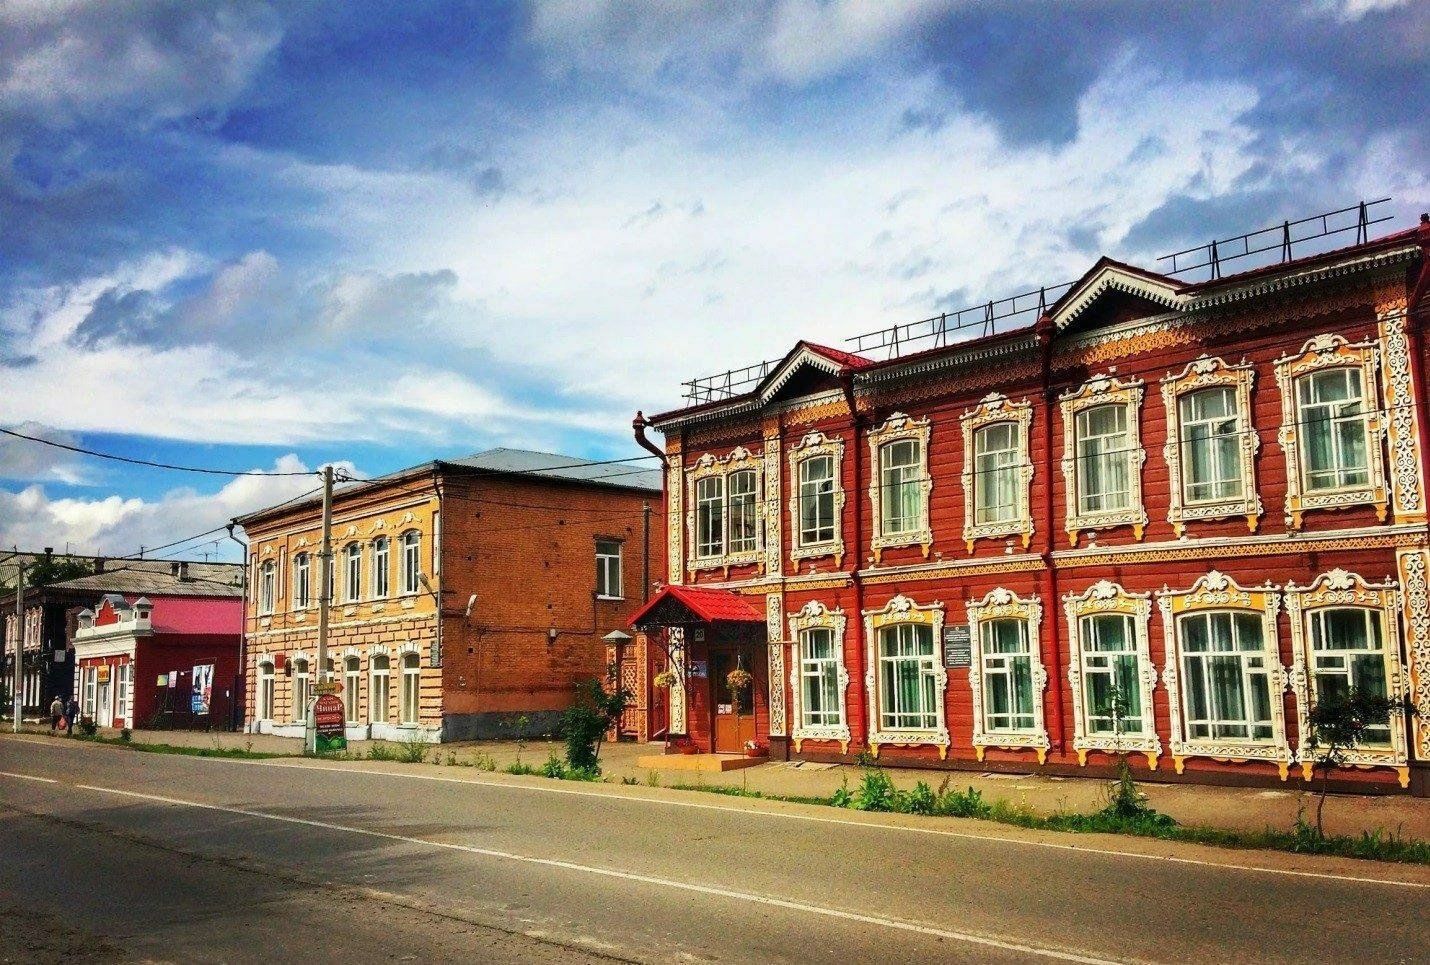 мариинск город музей под открытым небом